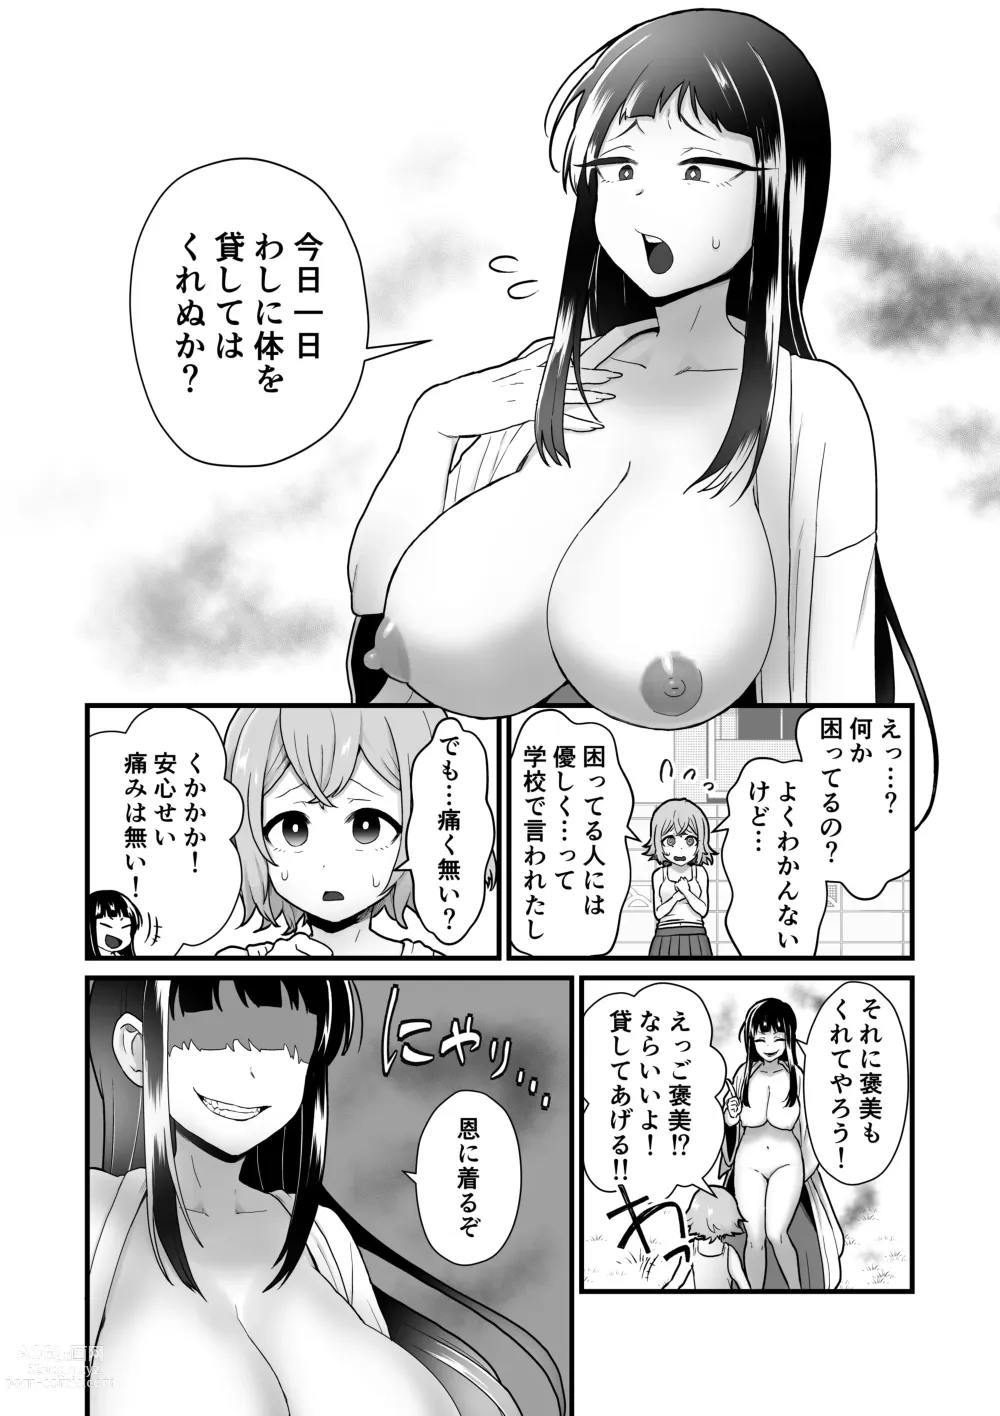 Page 5 of doujinshi Akuryo no jutai